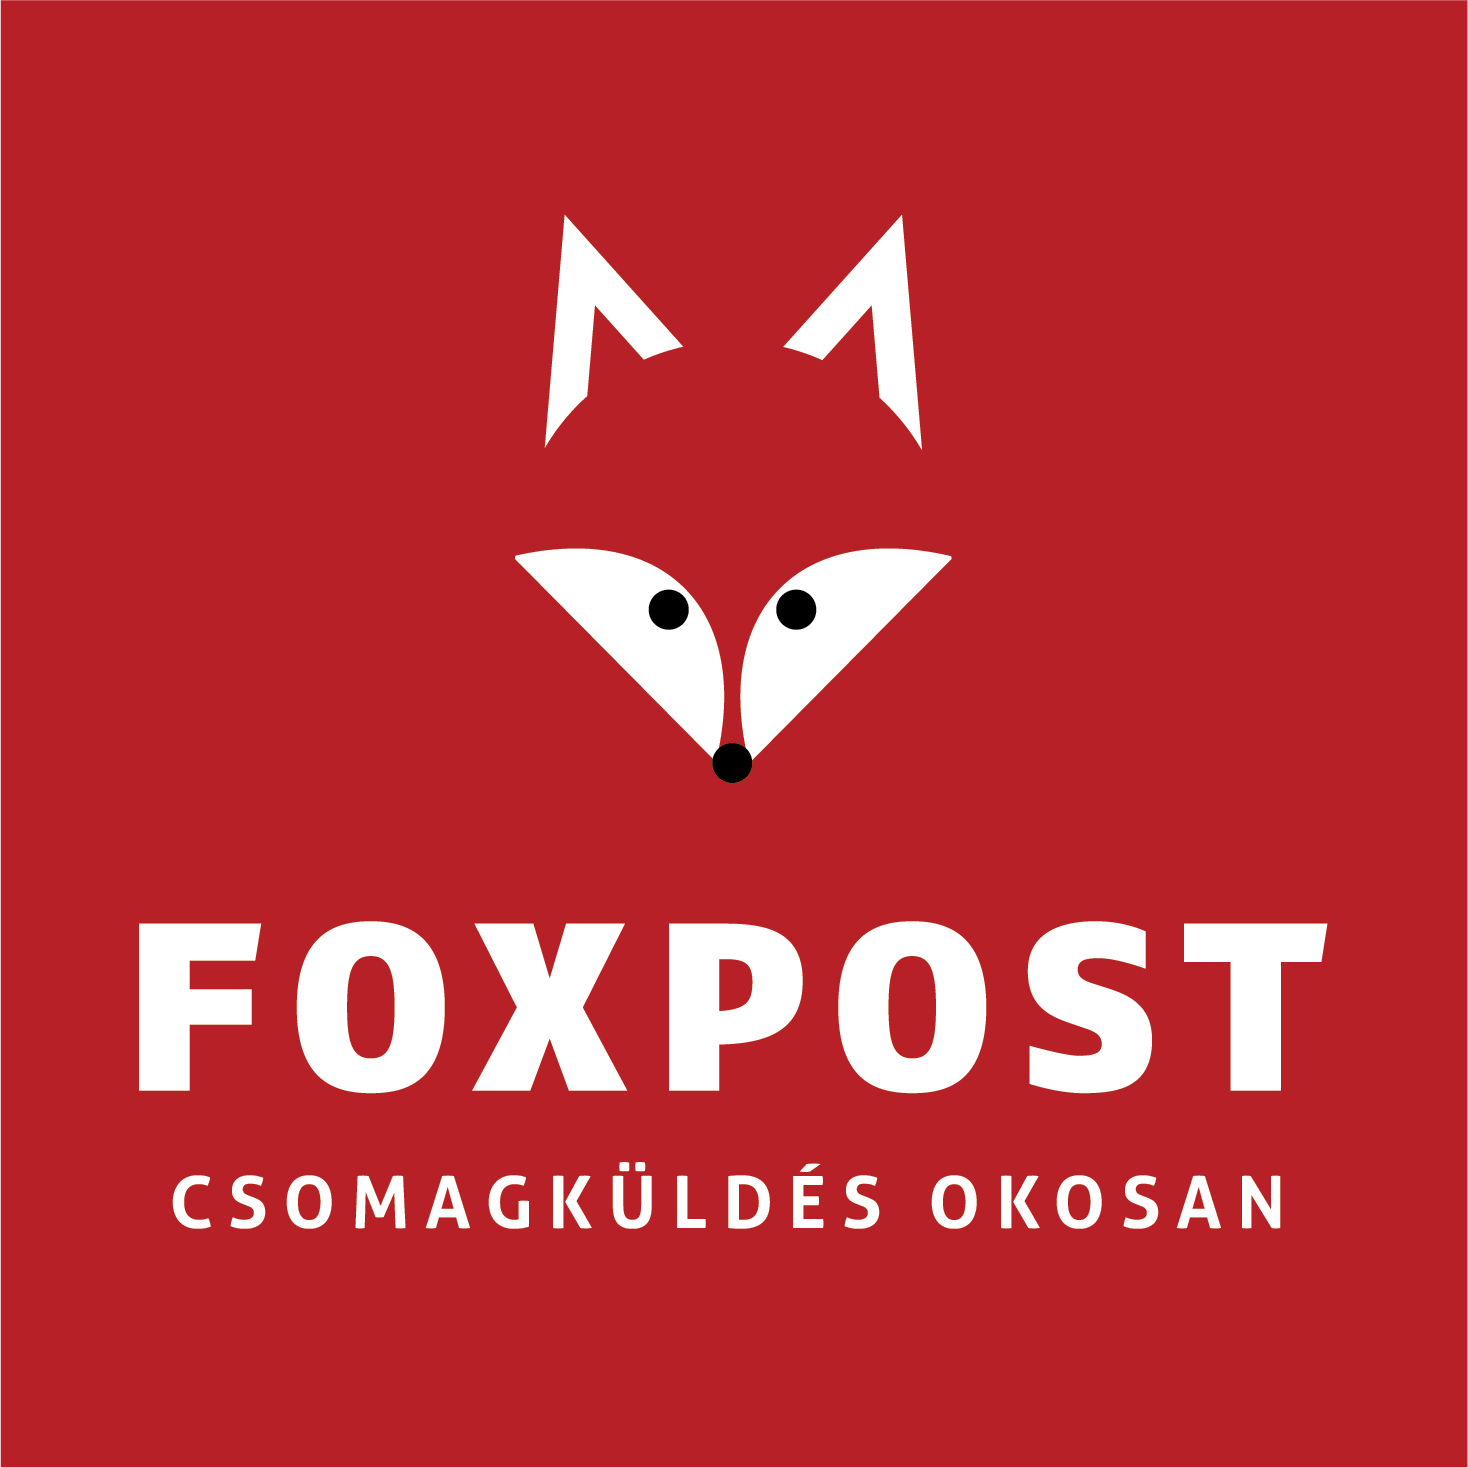 Merre jár a FOXPOST csomagom?